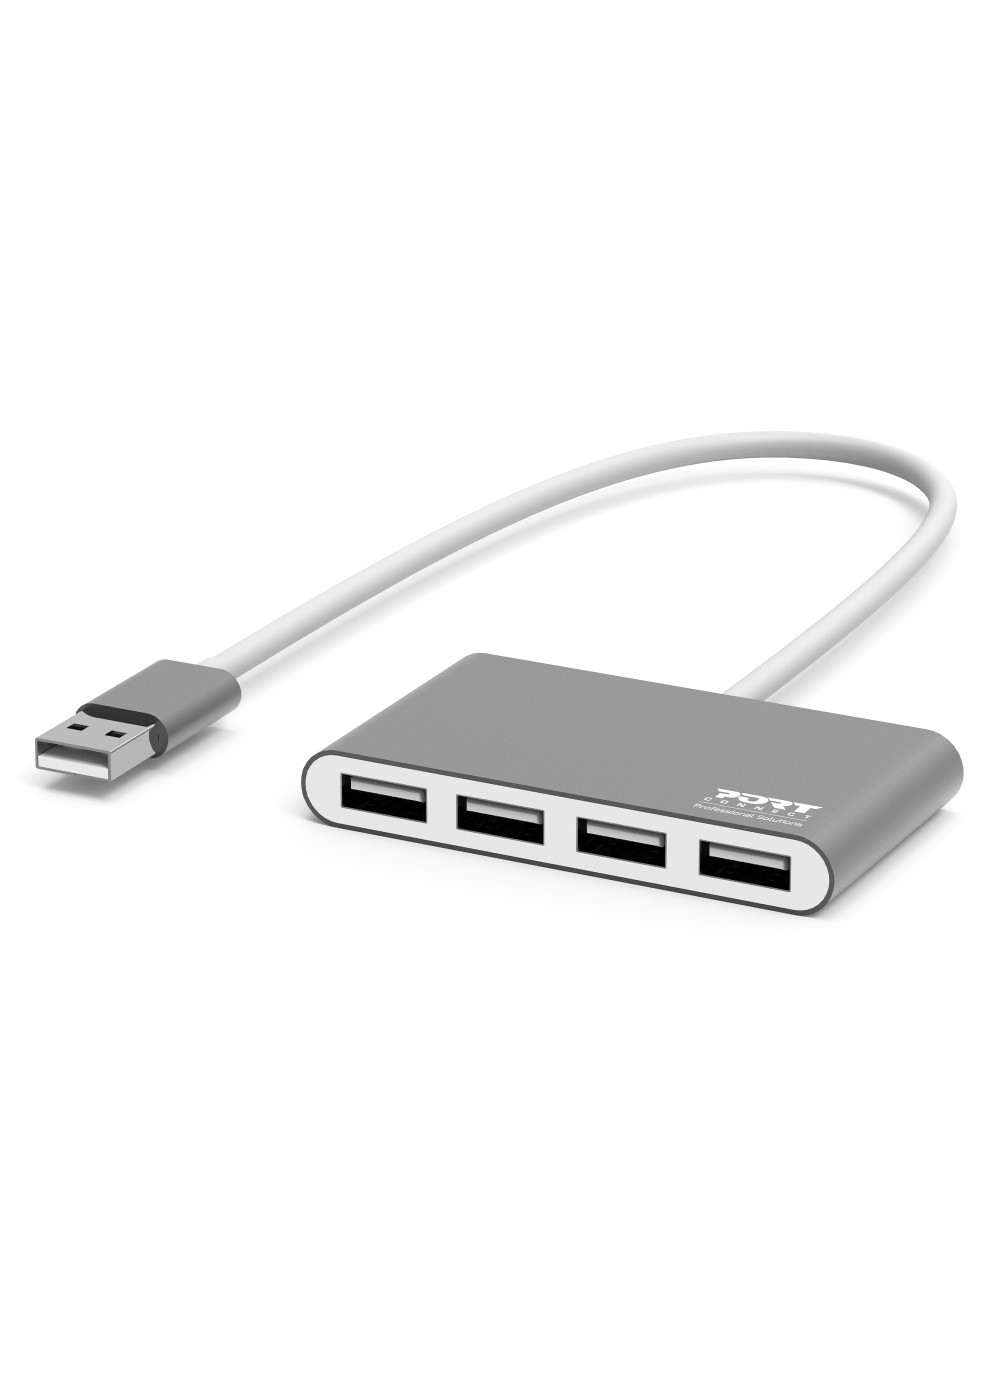 Port Connect Hub USB 4 PORTS 2.0 480 Mb/s